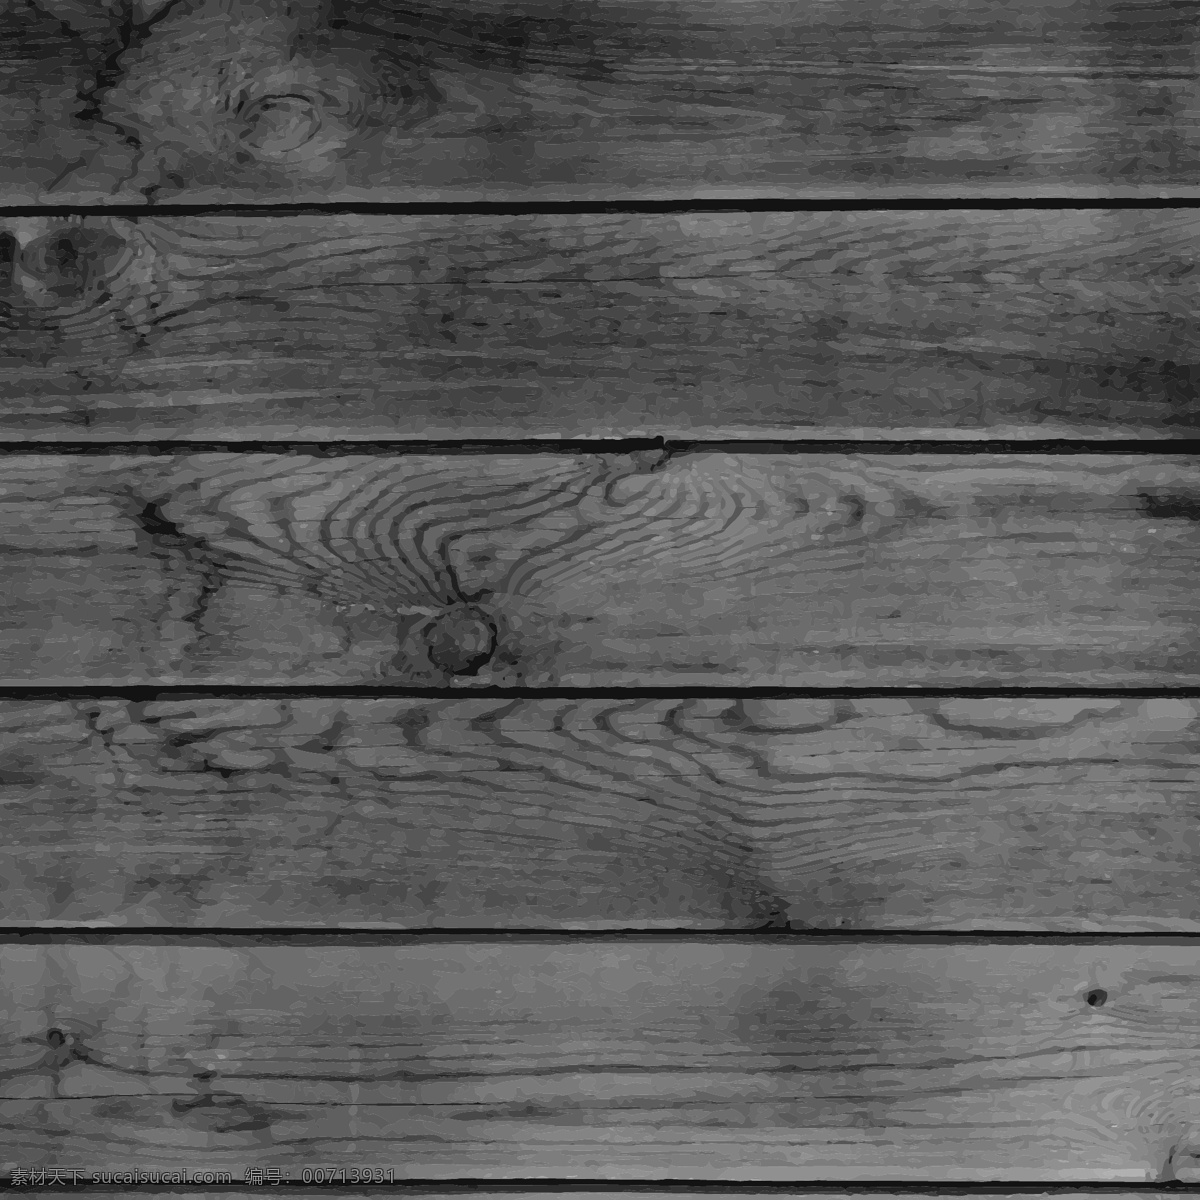 木纹背景 木纹纹理背景 木板 木材质 木纹理 木纹 木纹底纹背景 木板条 生活素材